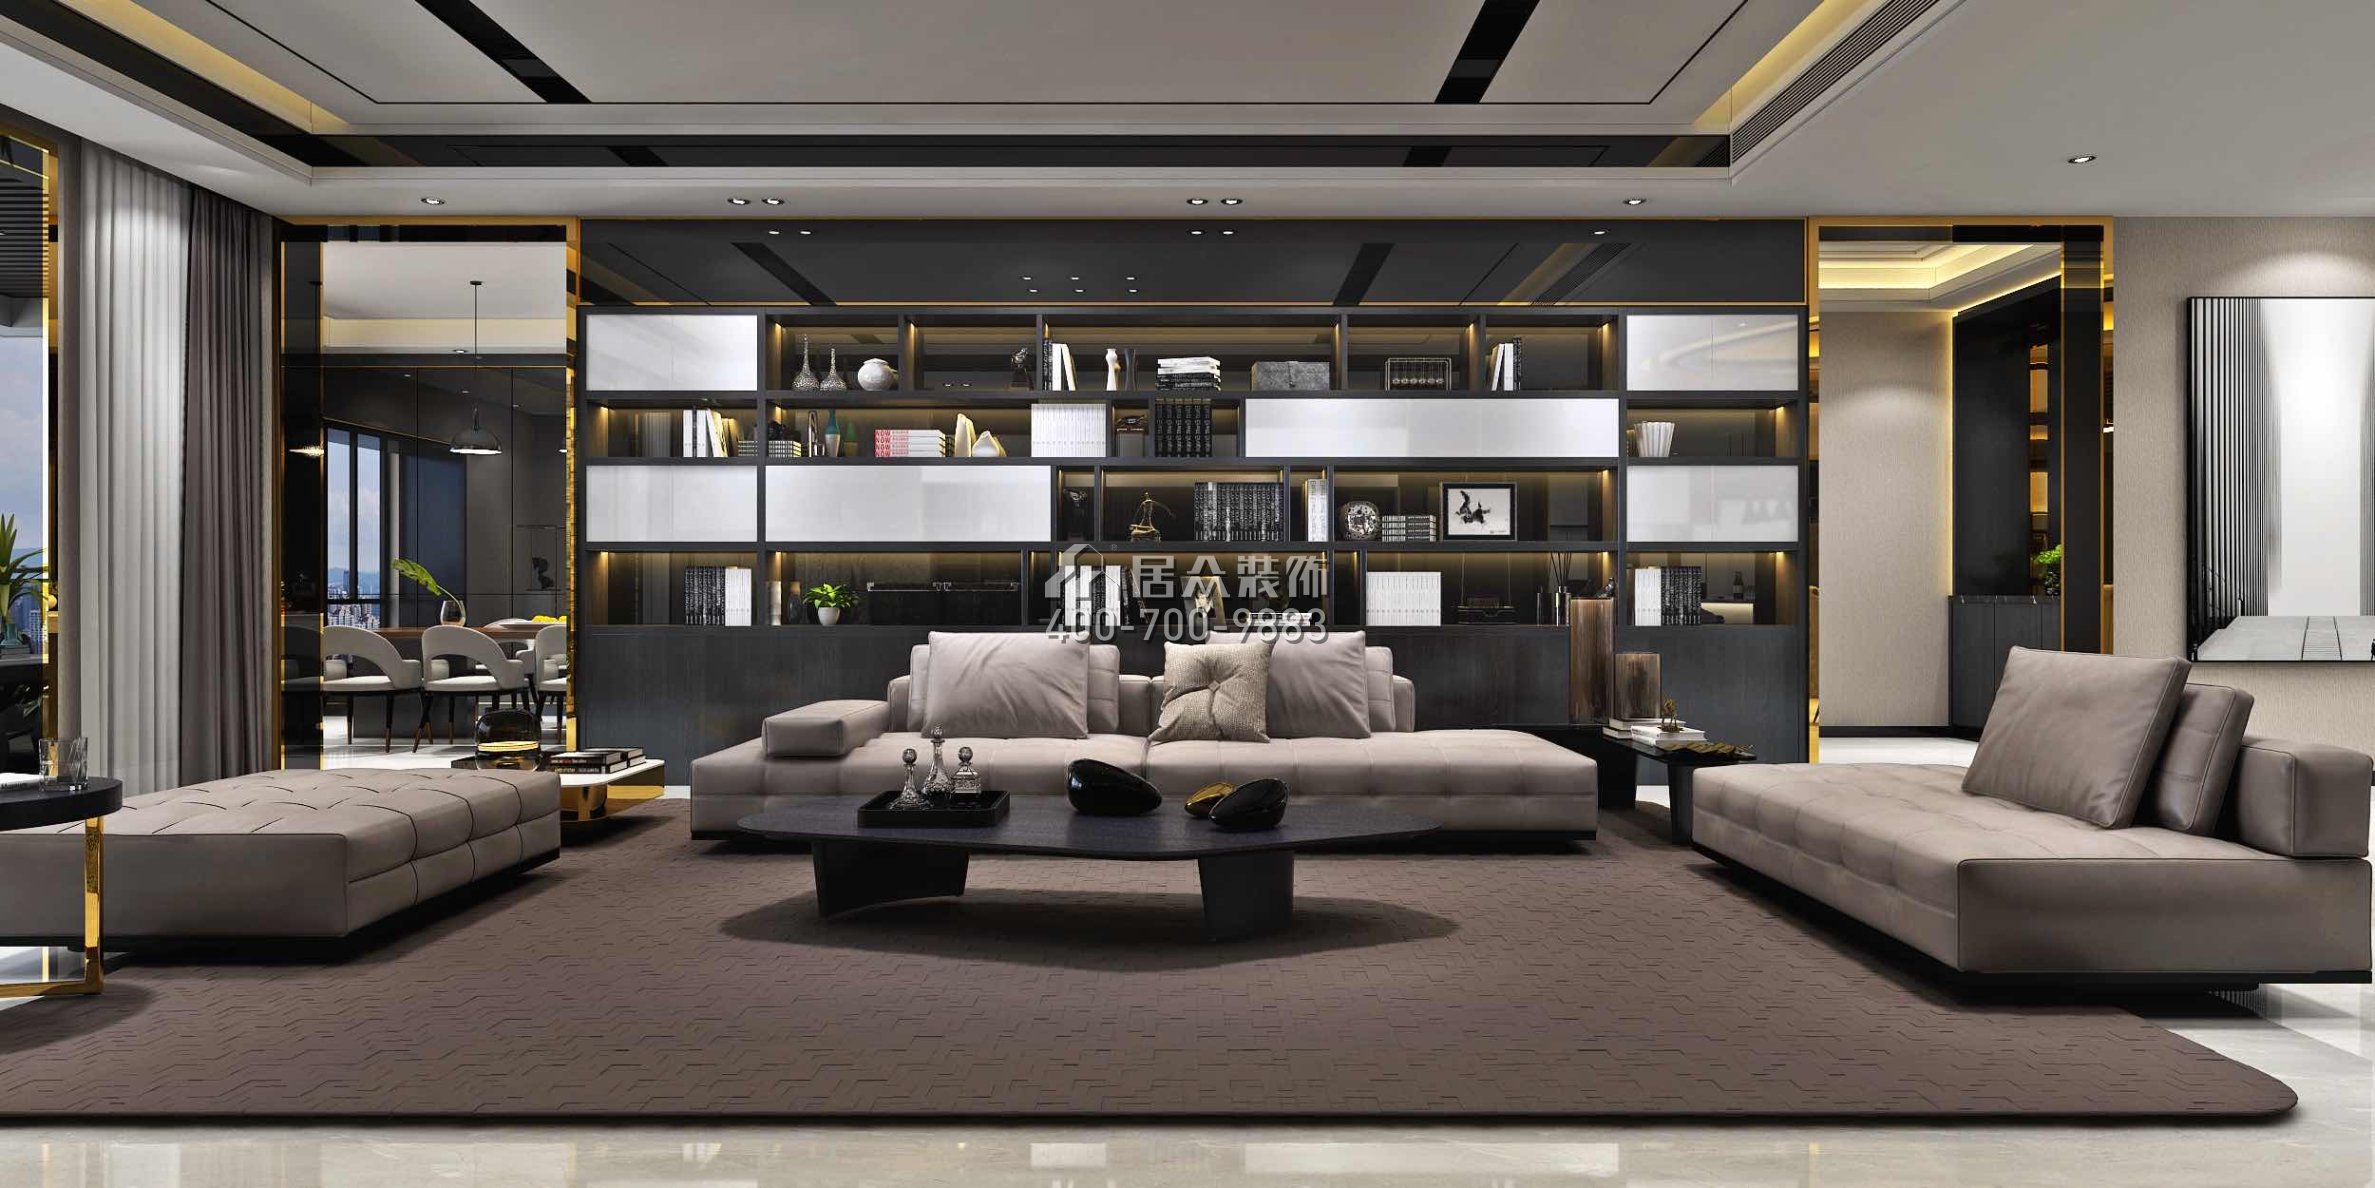 龍泉豪苑560平方米現代簡約風格平層戶型客廳裝修效果圖